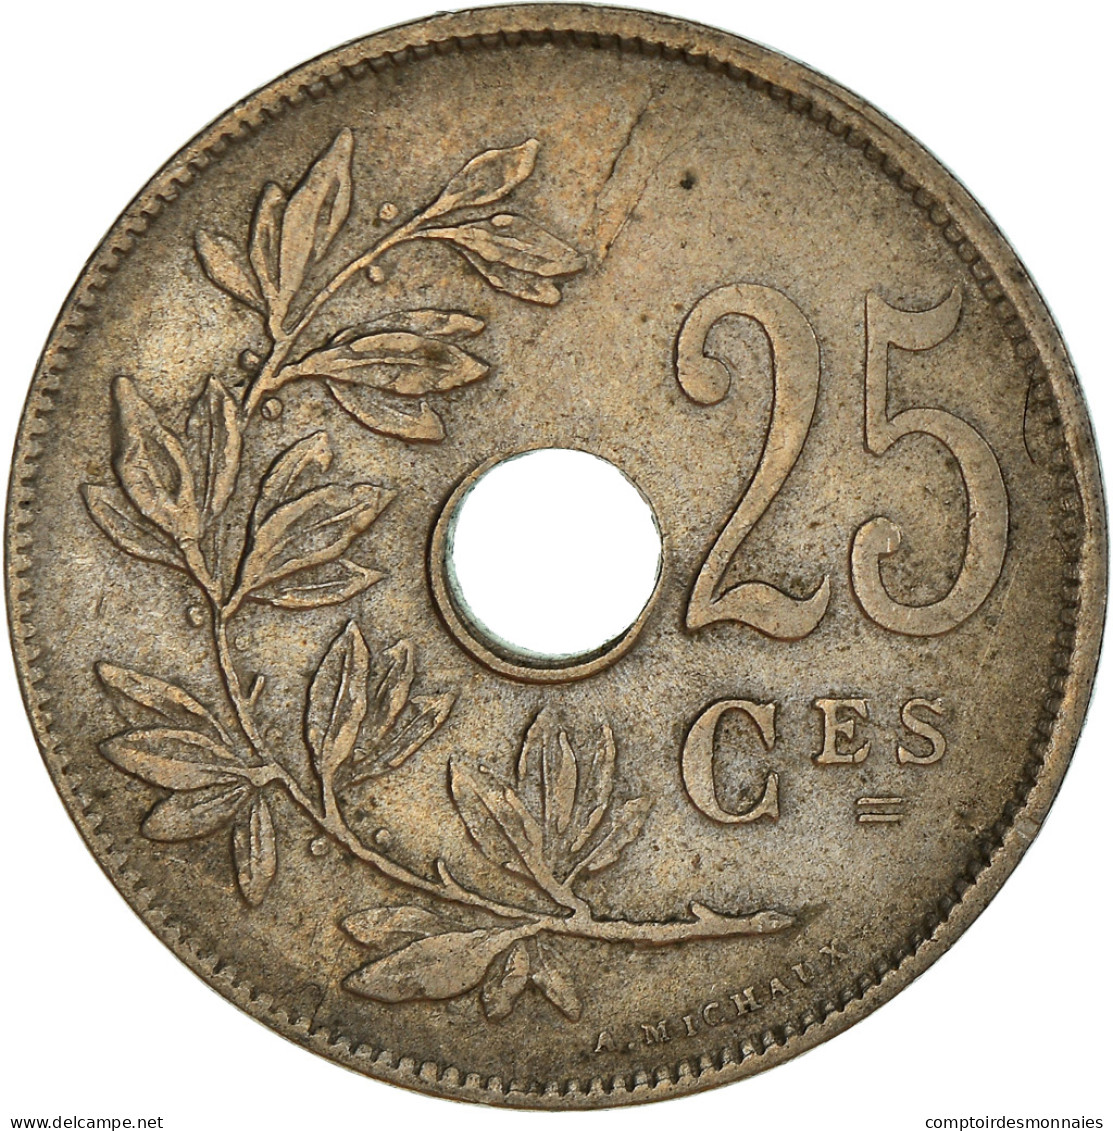 Monnaie, Belgique, 25 Centimes, 1929, TTB+, Cupro-nickel, KM:68.1 - 25 Cent